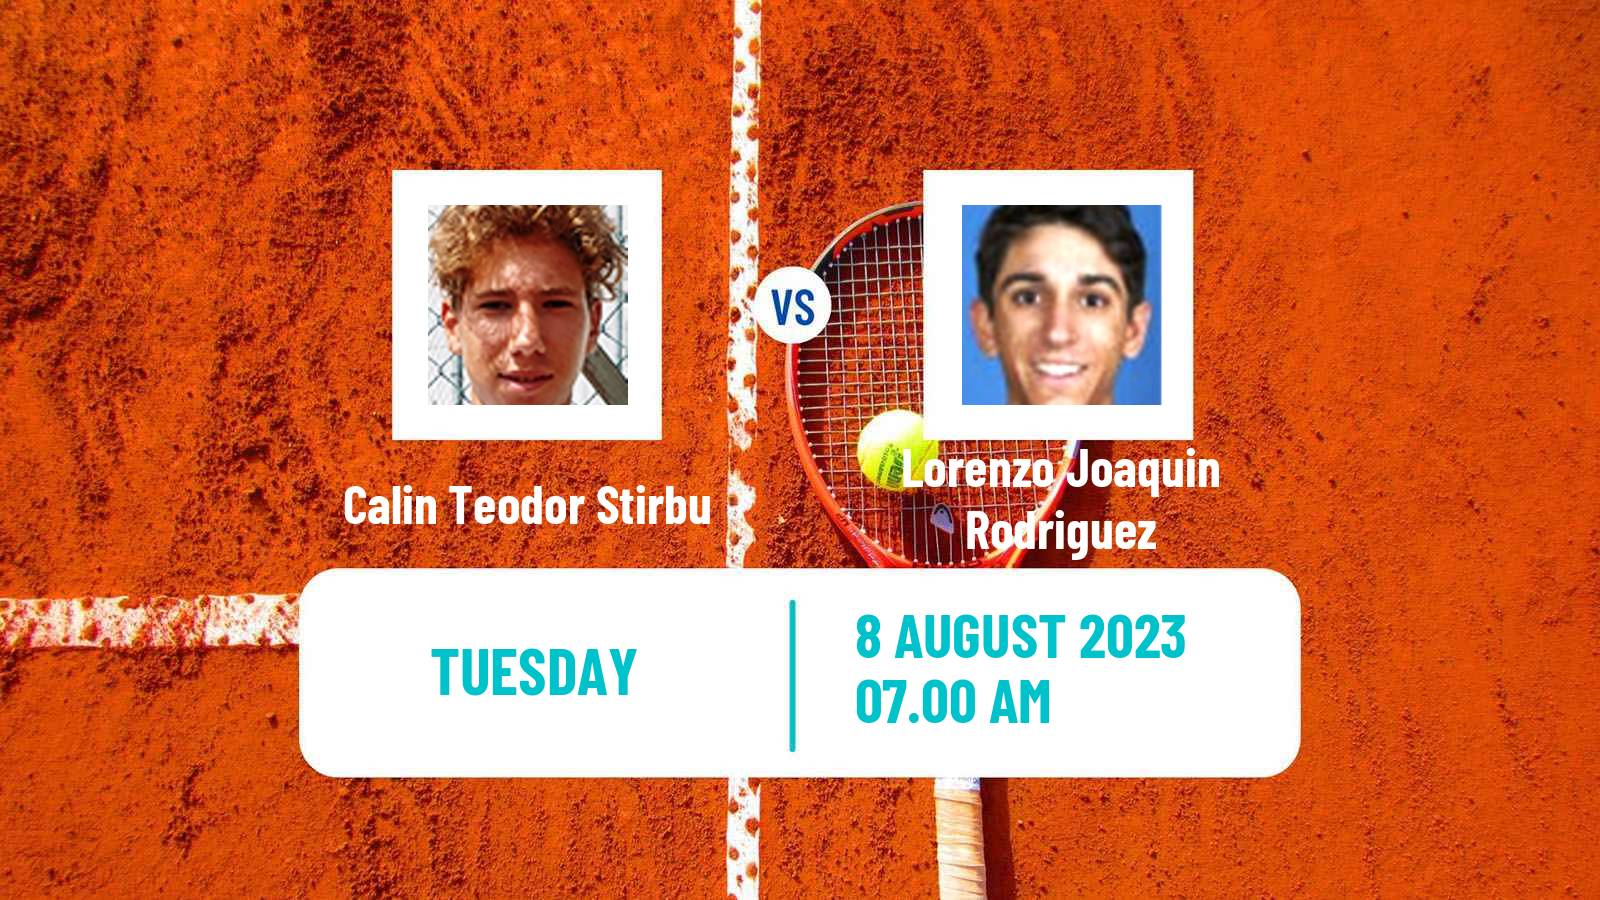 Tennis ITF M15 Curtea De Arges Men Calin Teodor Stirbu - Lorenzo Joaquin Rodriguez